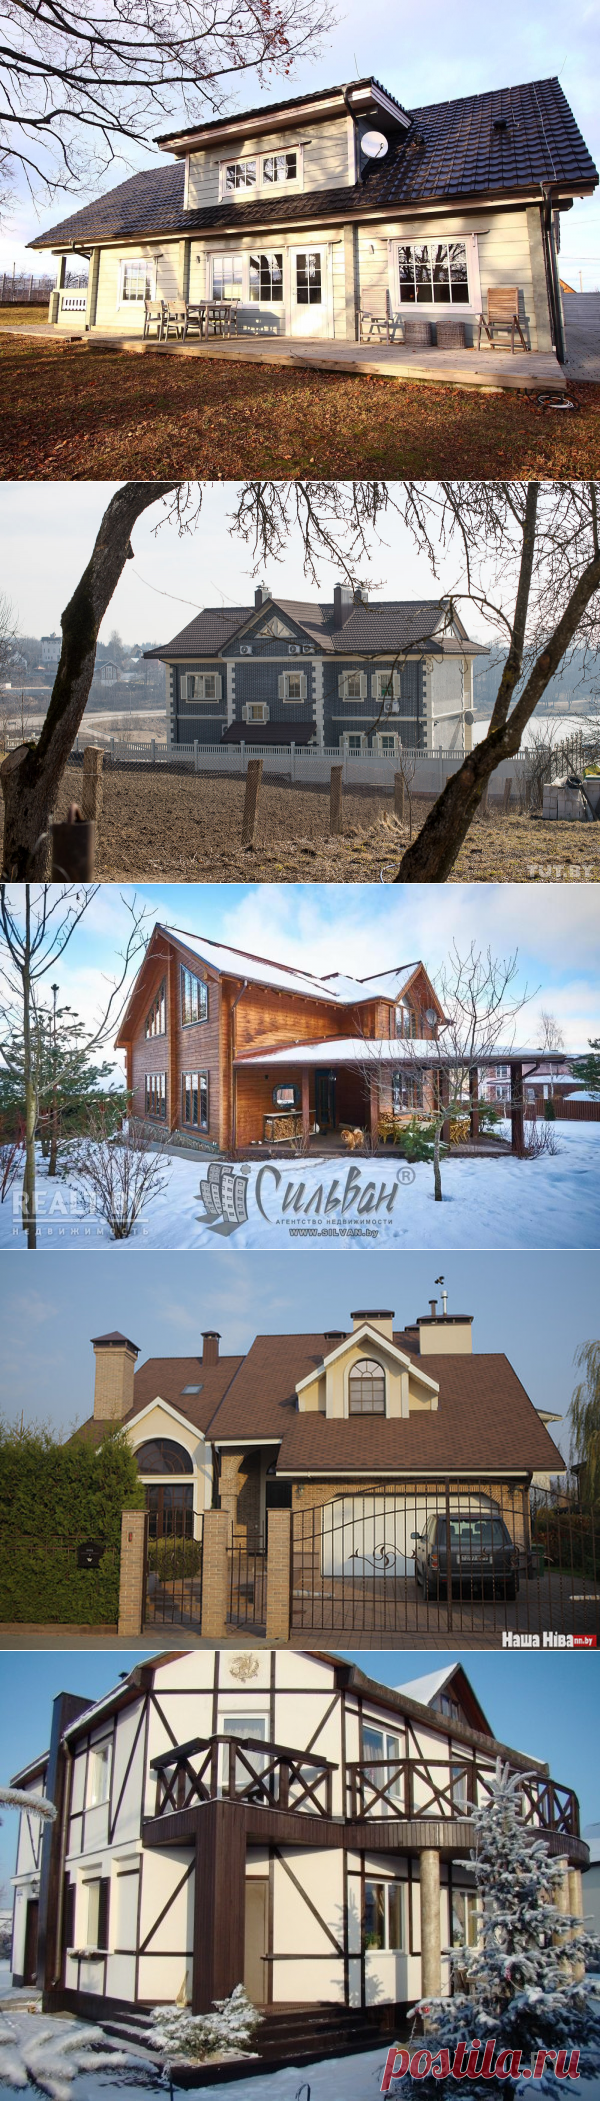 Как в Европе. Топ-10 домов в Минске и пригороде, которые построены с нездешним вкусом | REALTY.TUT.BY